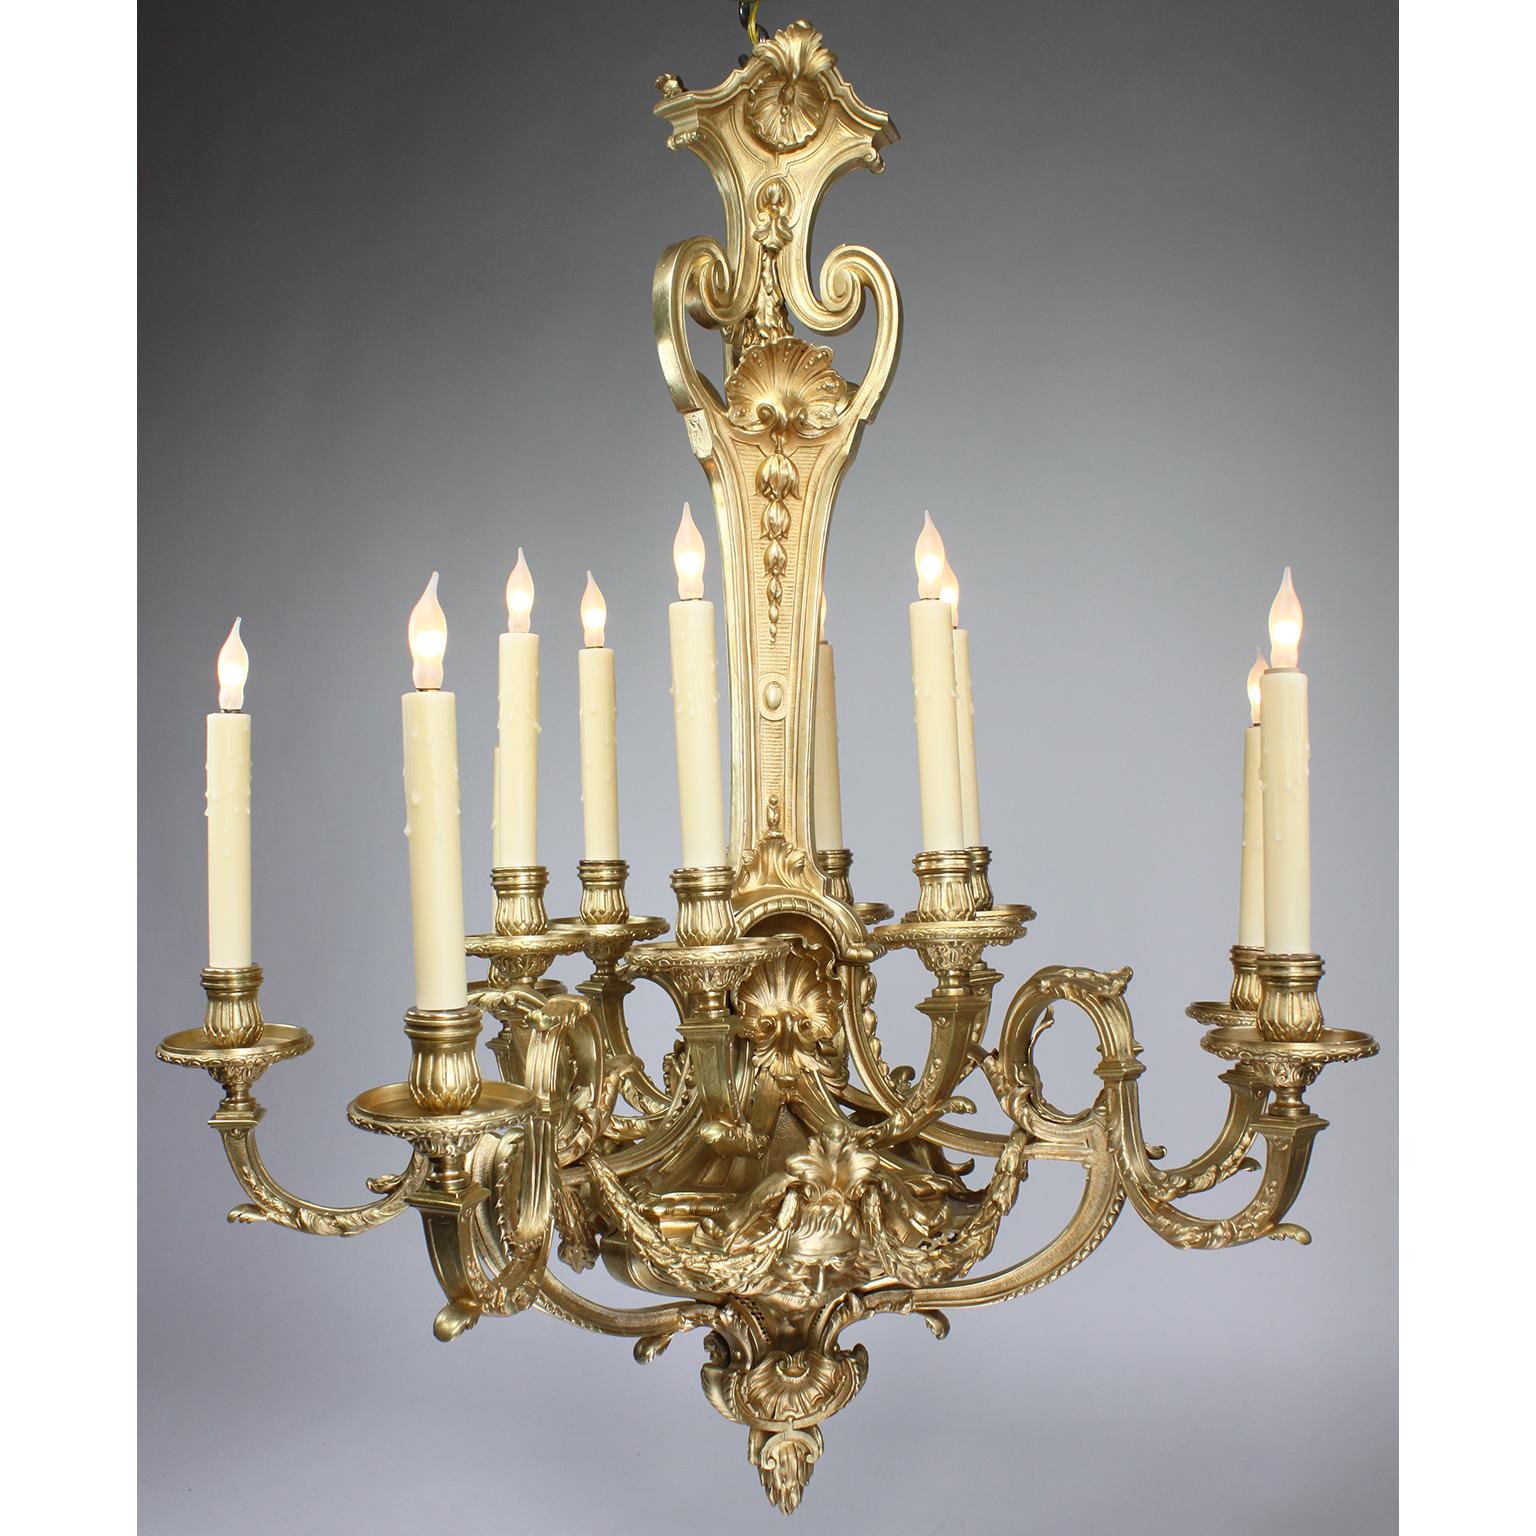 Ein feiner französischer Belle-Époque-Kronleuchter aus vergoldeter Bronze mit zwölf Lichtern im Regency-Revival-Stil (Régence-Stil). Der verschnörkelte, eiförmige Korpus hängt an einem zentralen, mit Muscheln und Blumen verzierten Stiel, der von